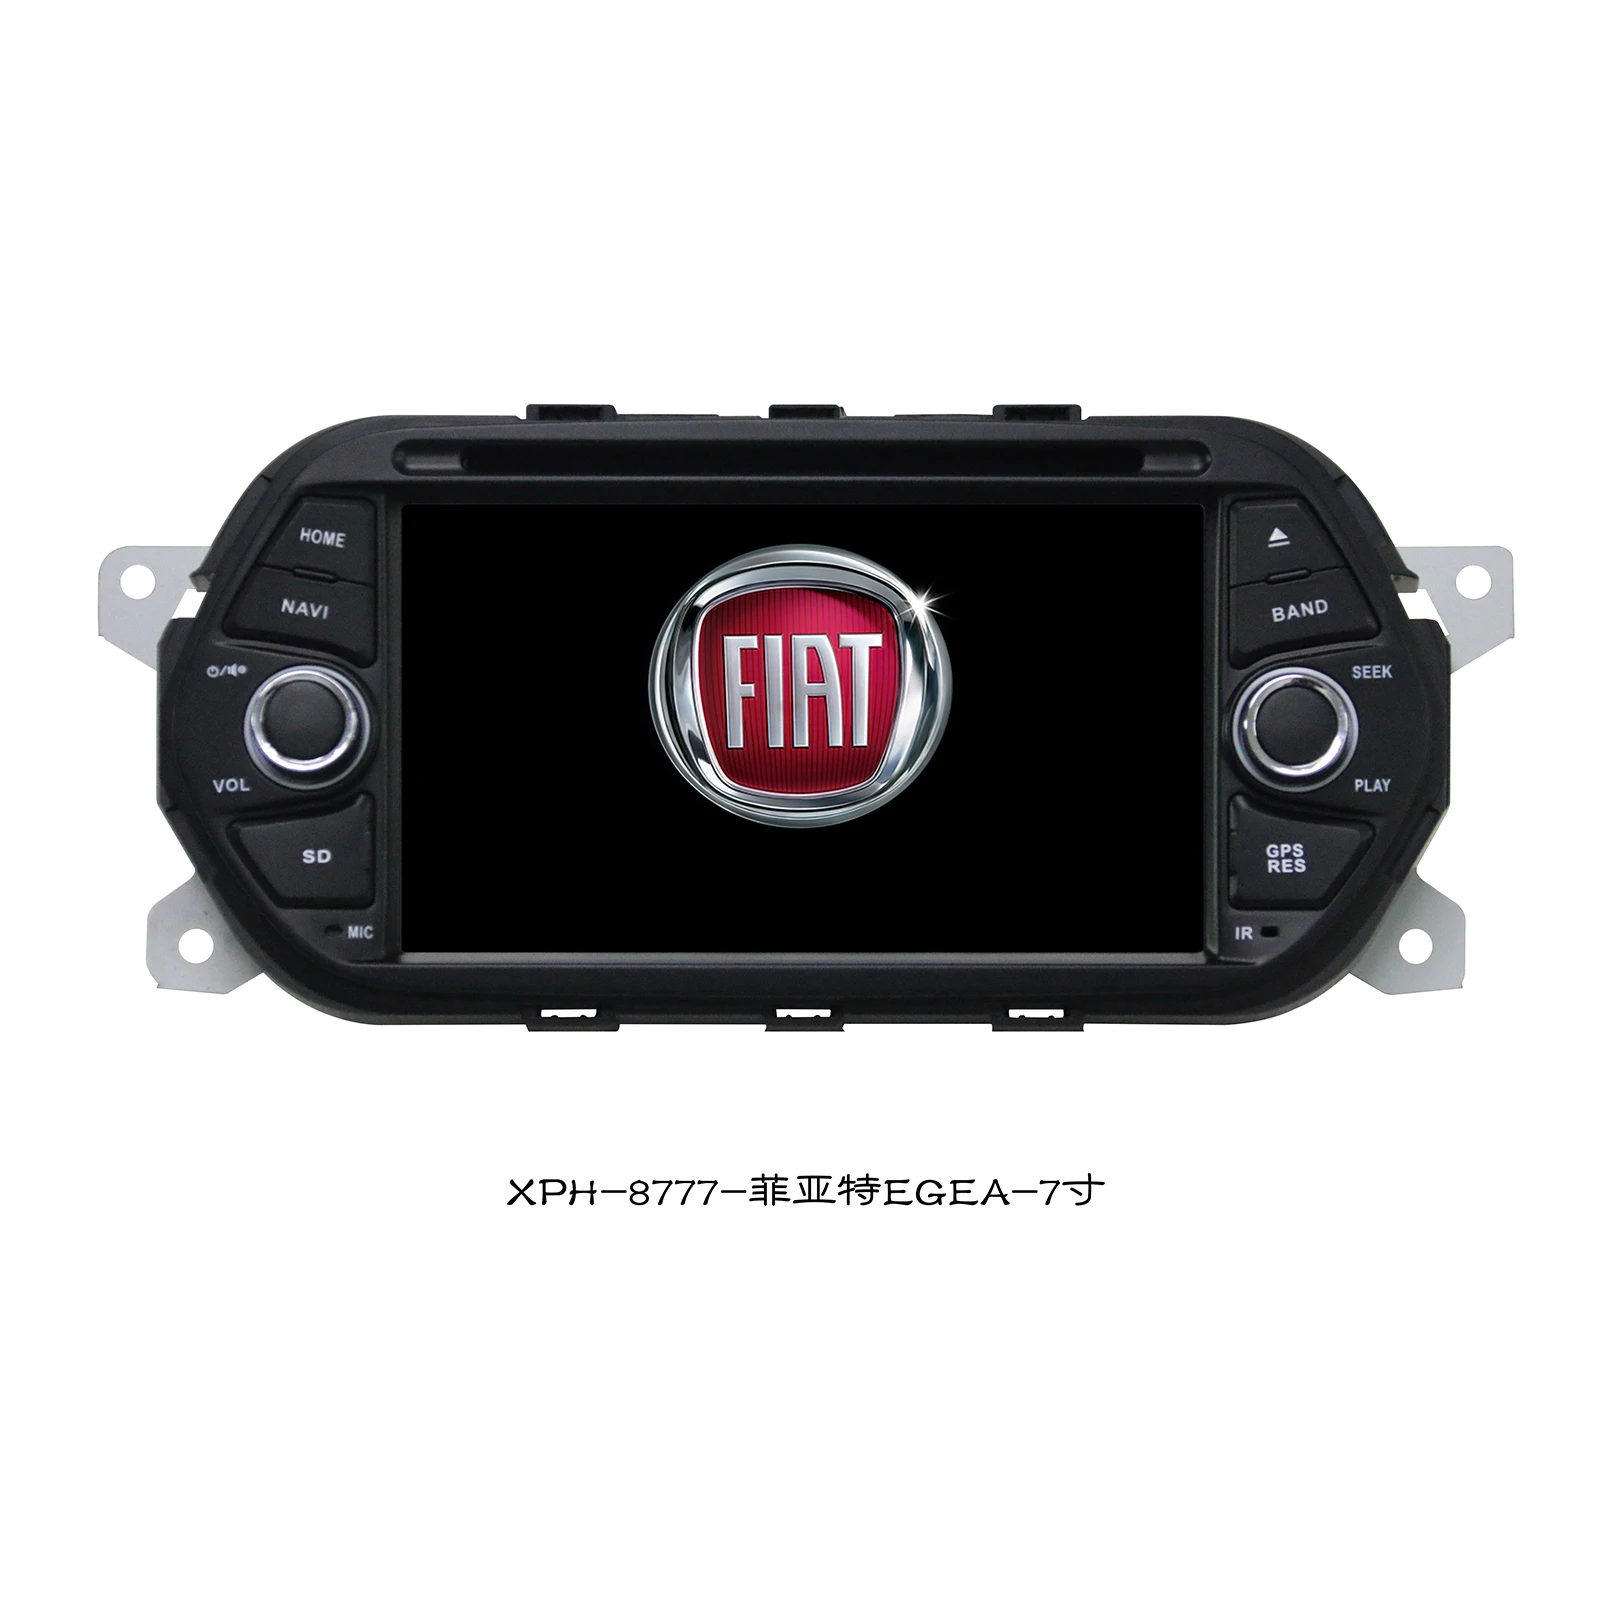 HCXV Android Автомобильный радиоприемник стерео Для Fiat EGEA Android Автомобильный стерео Автомобильная навигационная мультимедийная система DVD-плеер Аудио GPS Авторадио 1